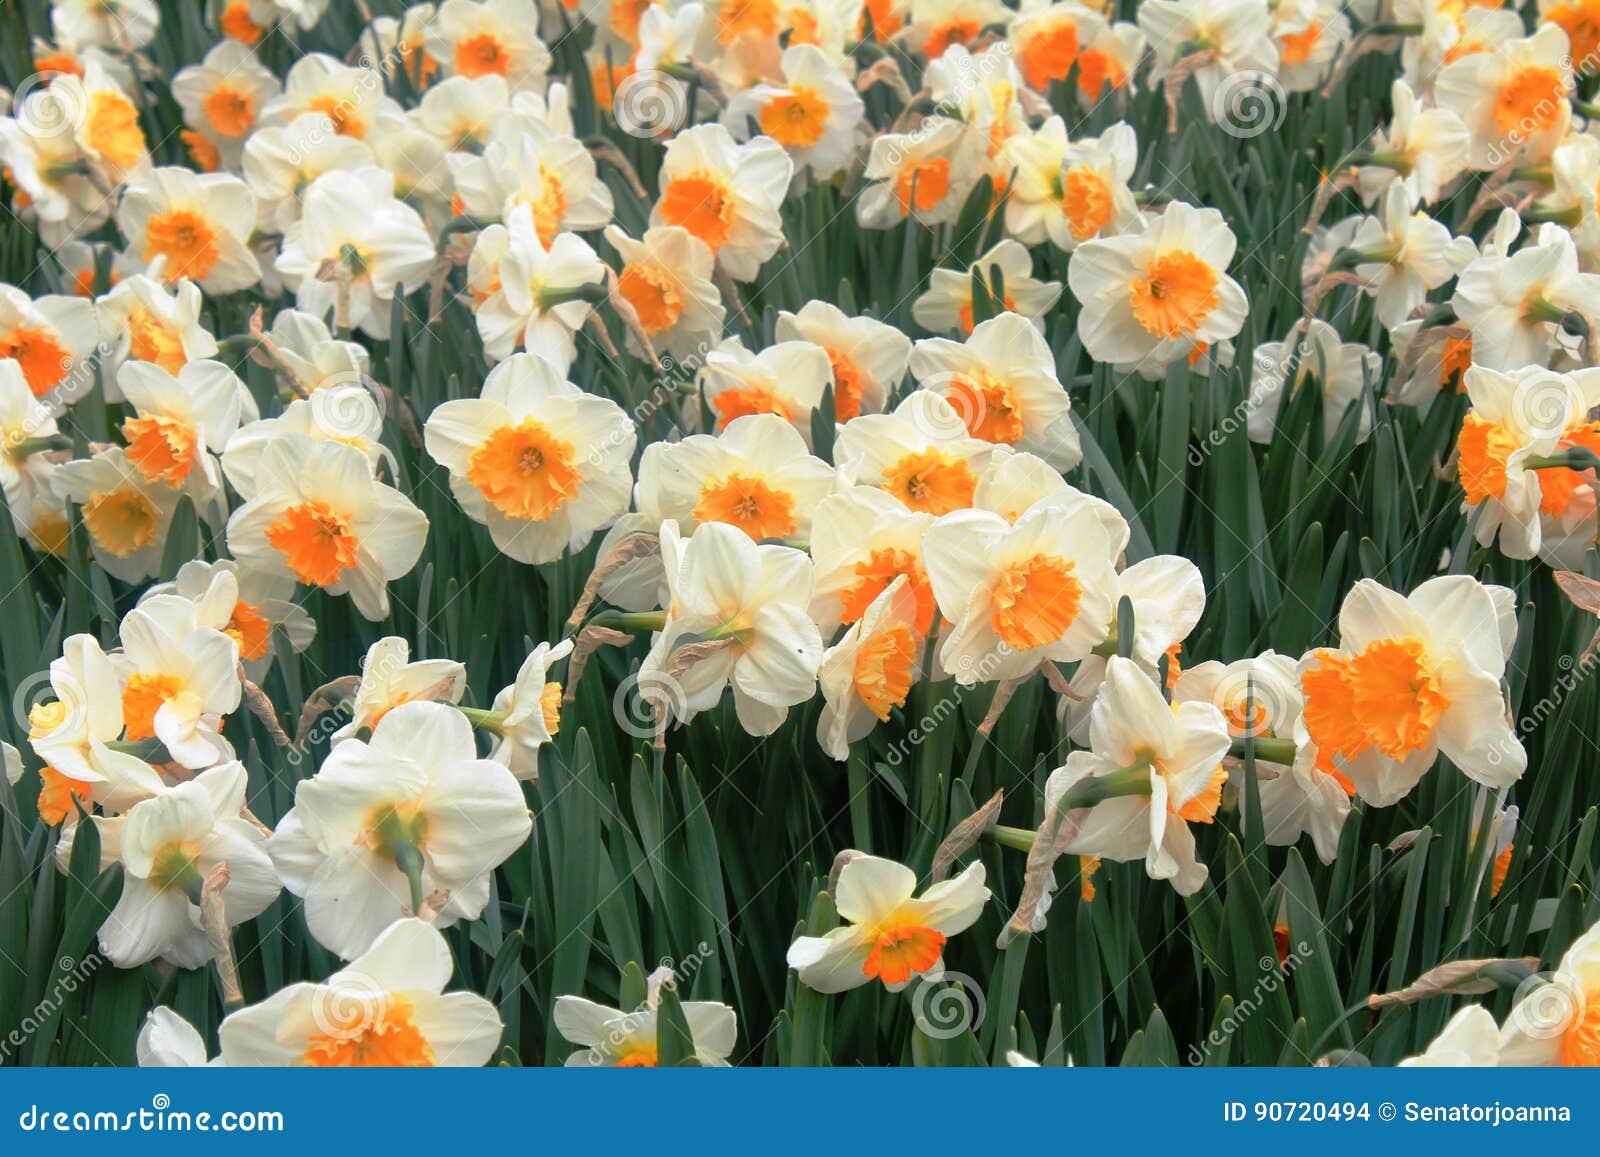 Narcisse Blanc Et Orange Dans Un Printemps Photo stock - Image du jonquilles,  fond: 90720494